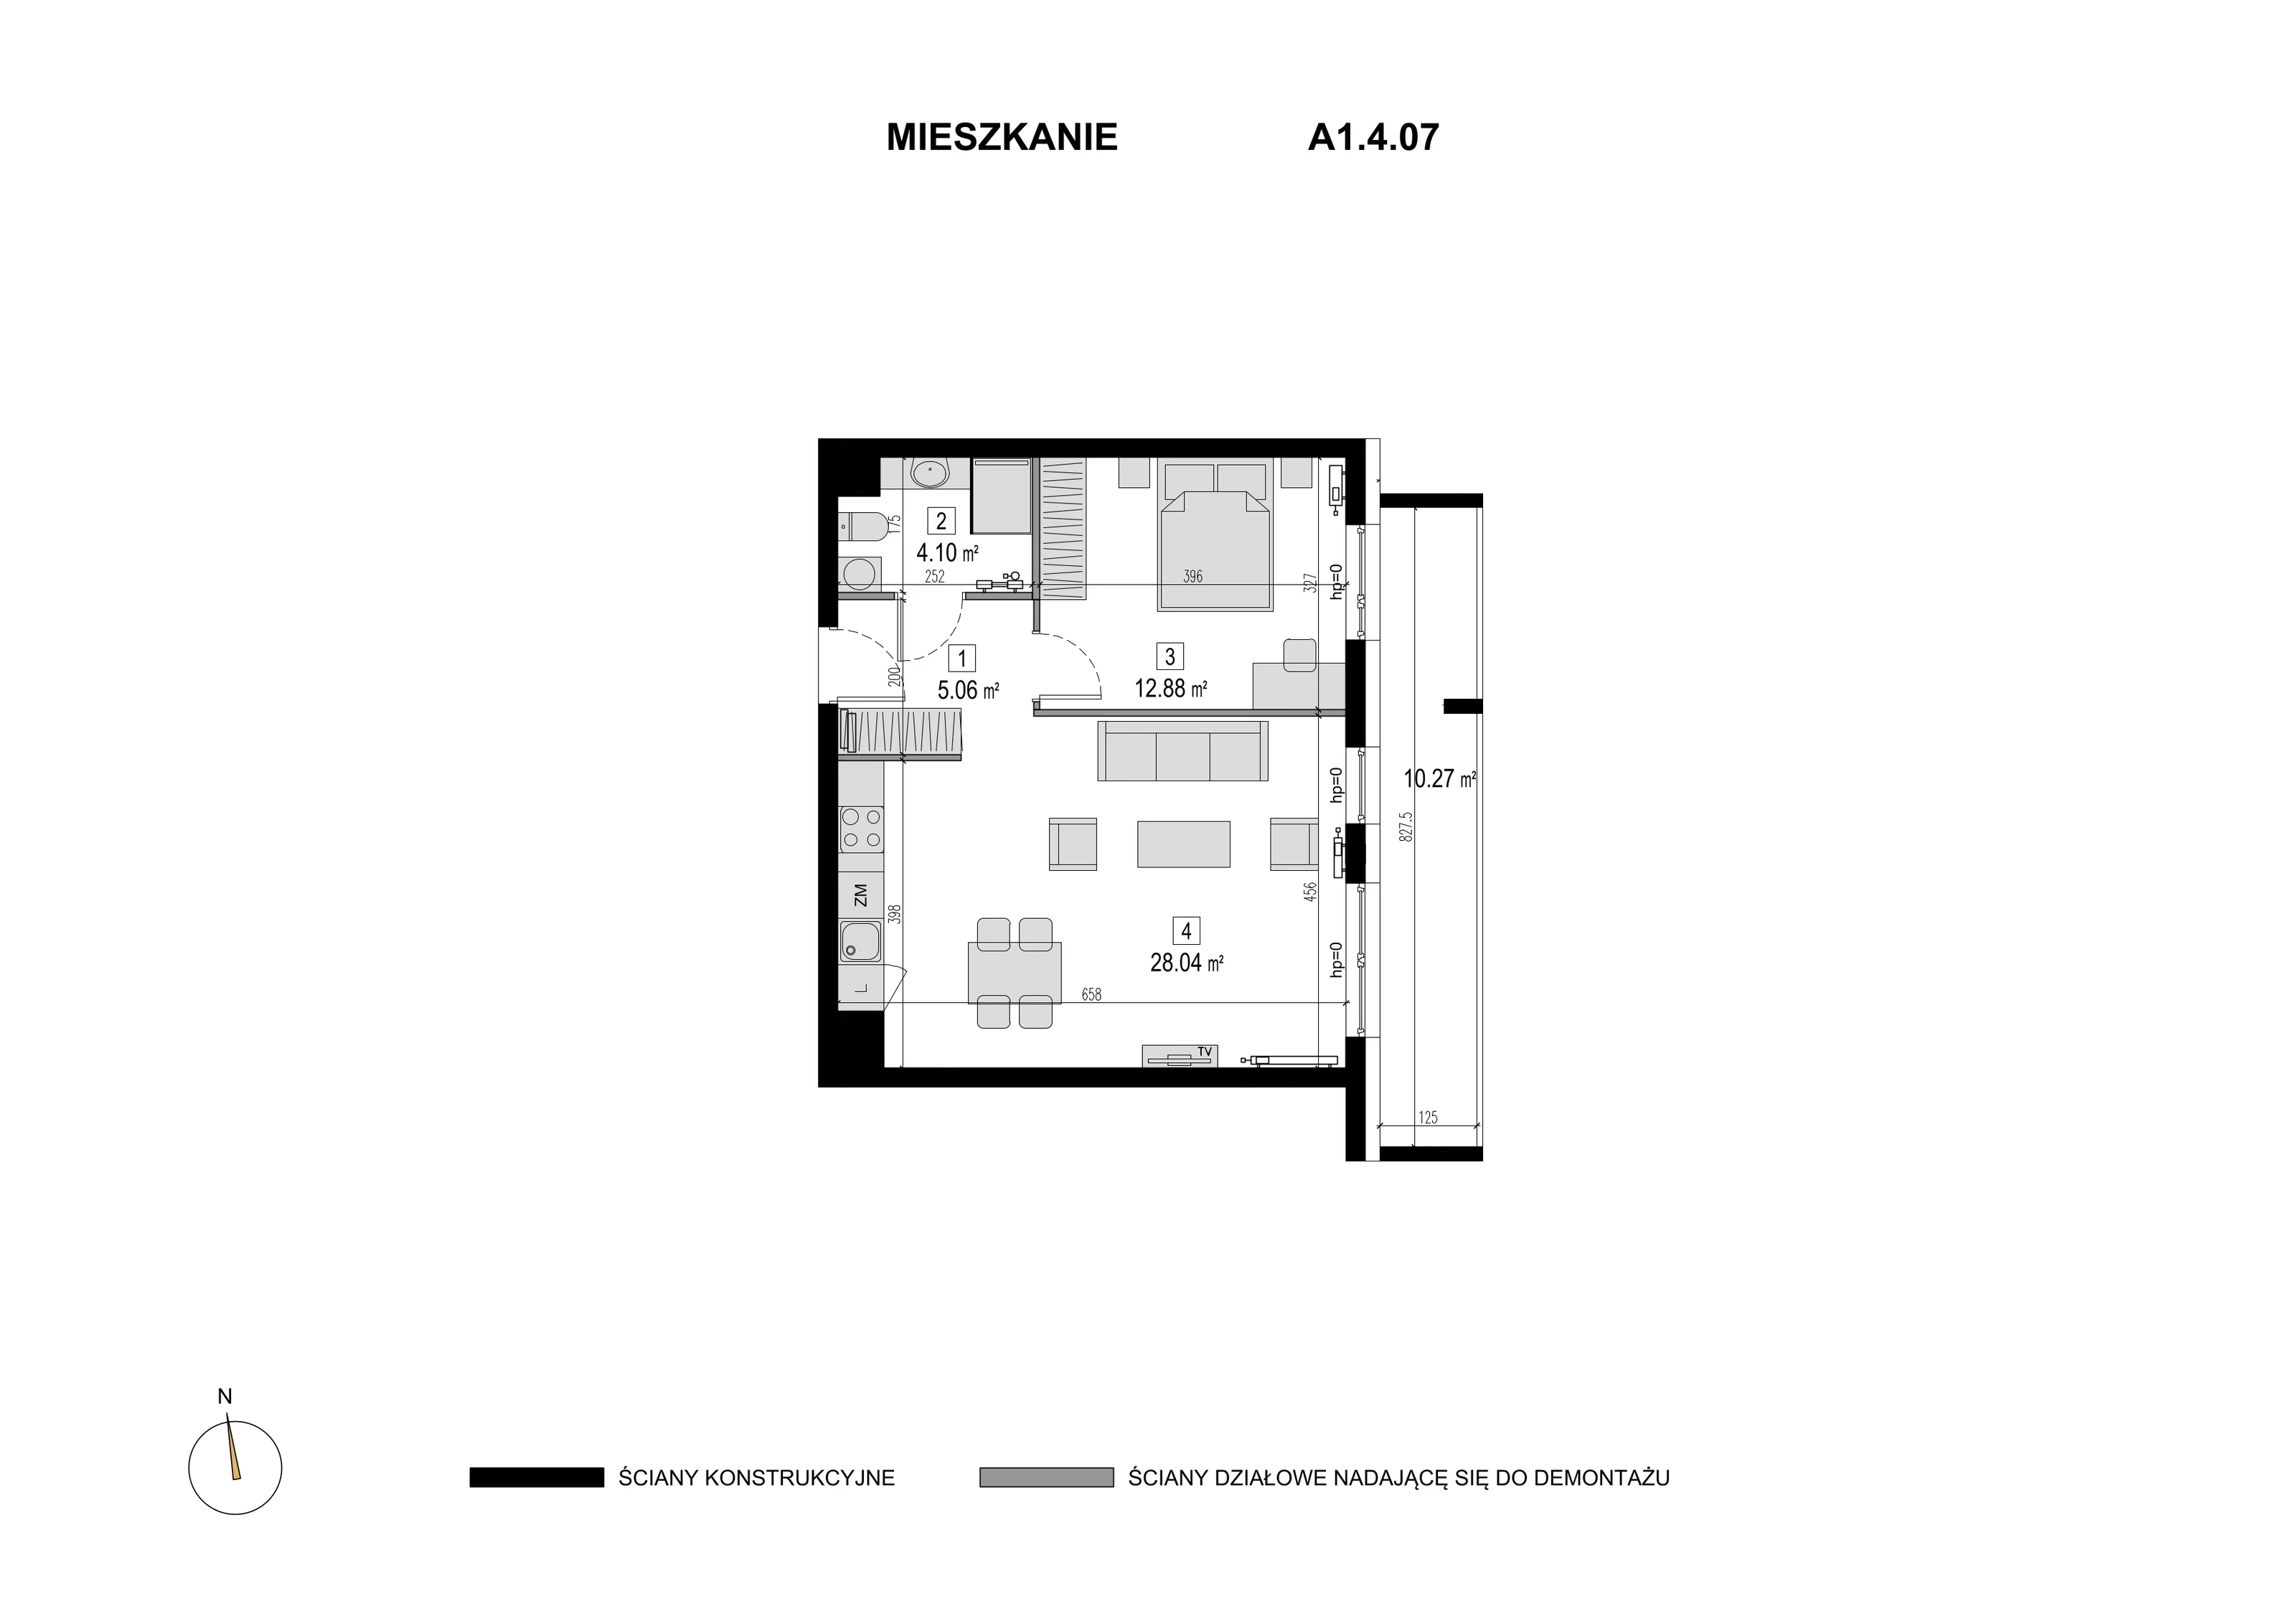 Mieszkanie 50,08 m², piętro 3, oferta nr A1.4.07, Novaforma, Legnica, ul. Chojnowska